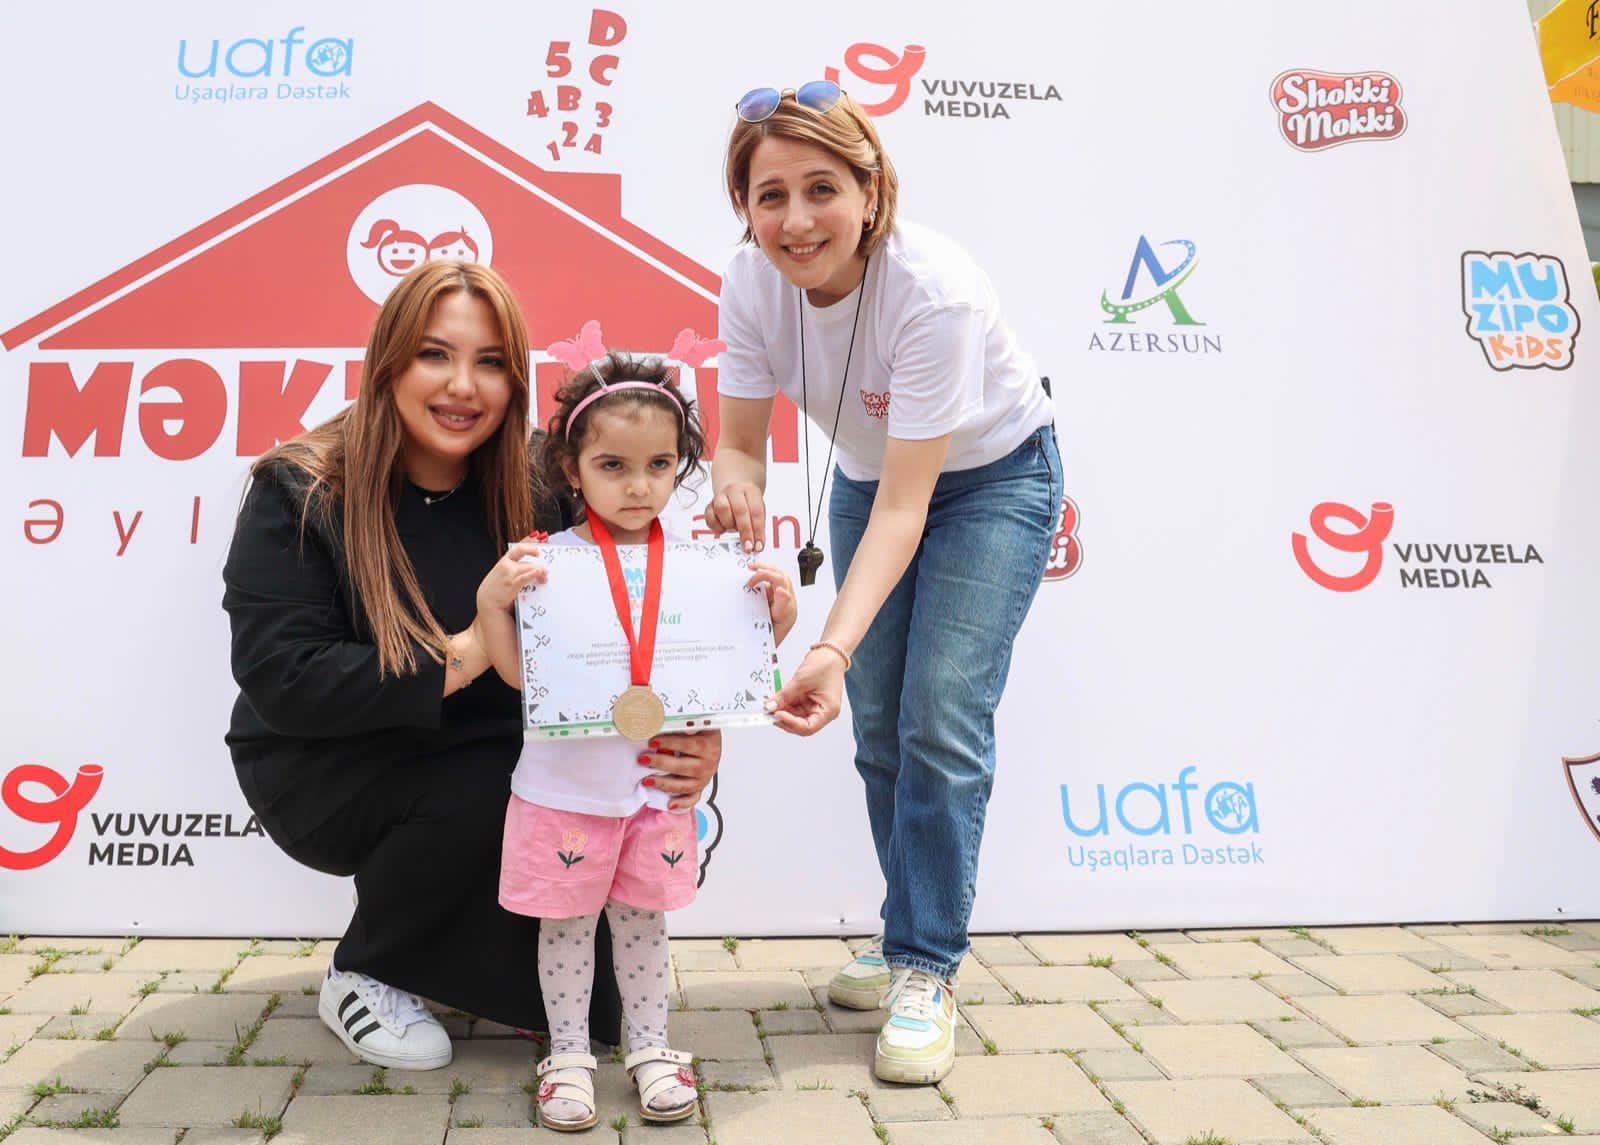 İlk milli uşaq markası  “Shokki Mokki” uşaqlar üçün Gəncədə festival təşkil edib